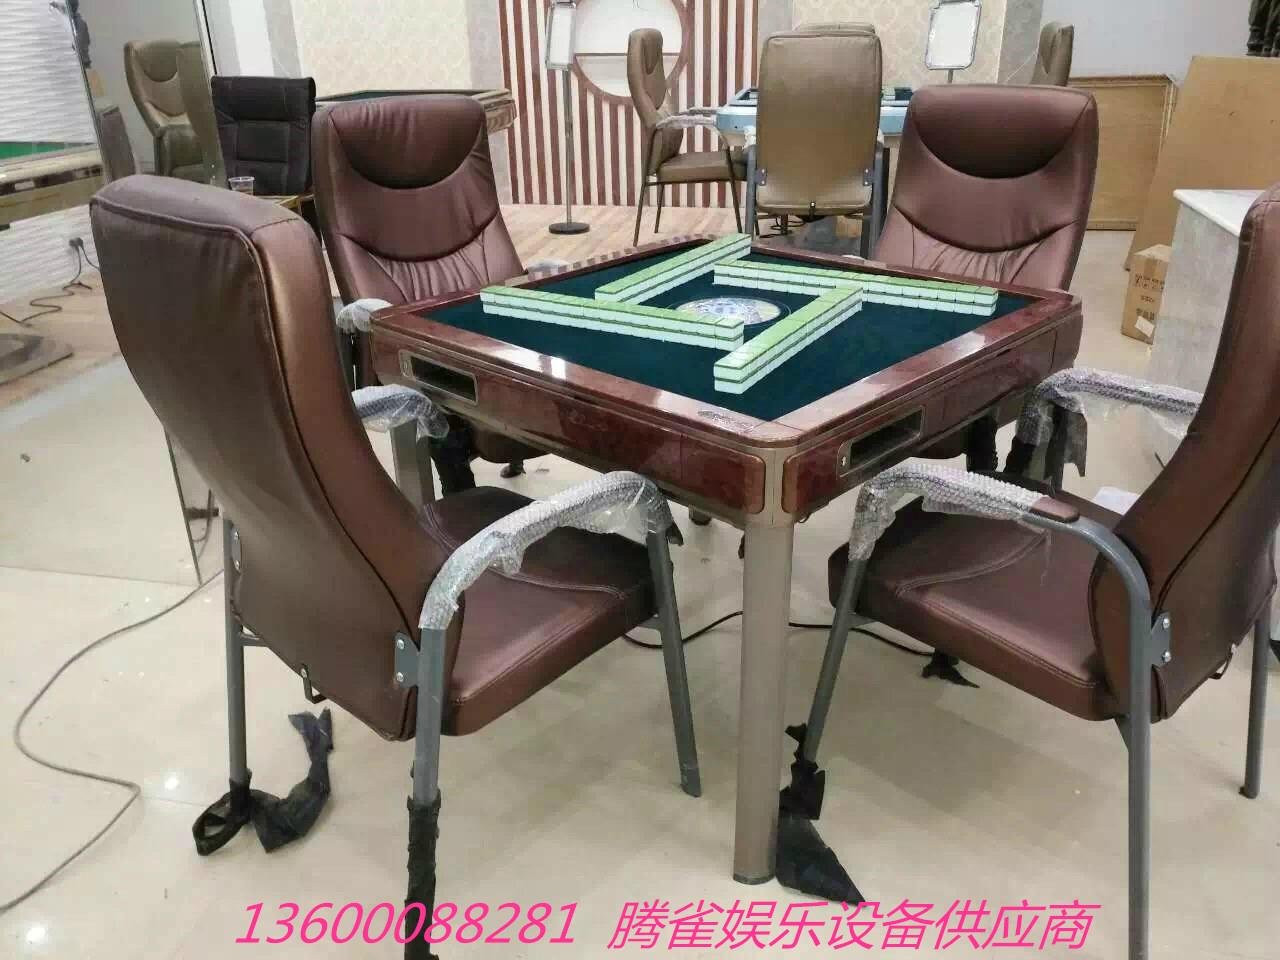 广州全自动麻将桌专卖 4